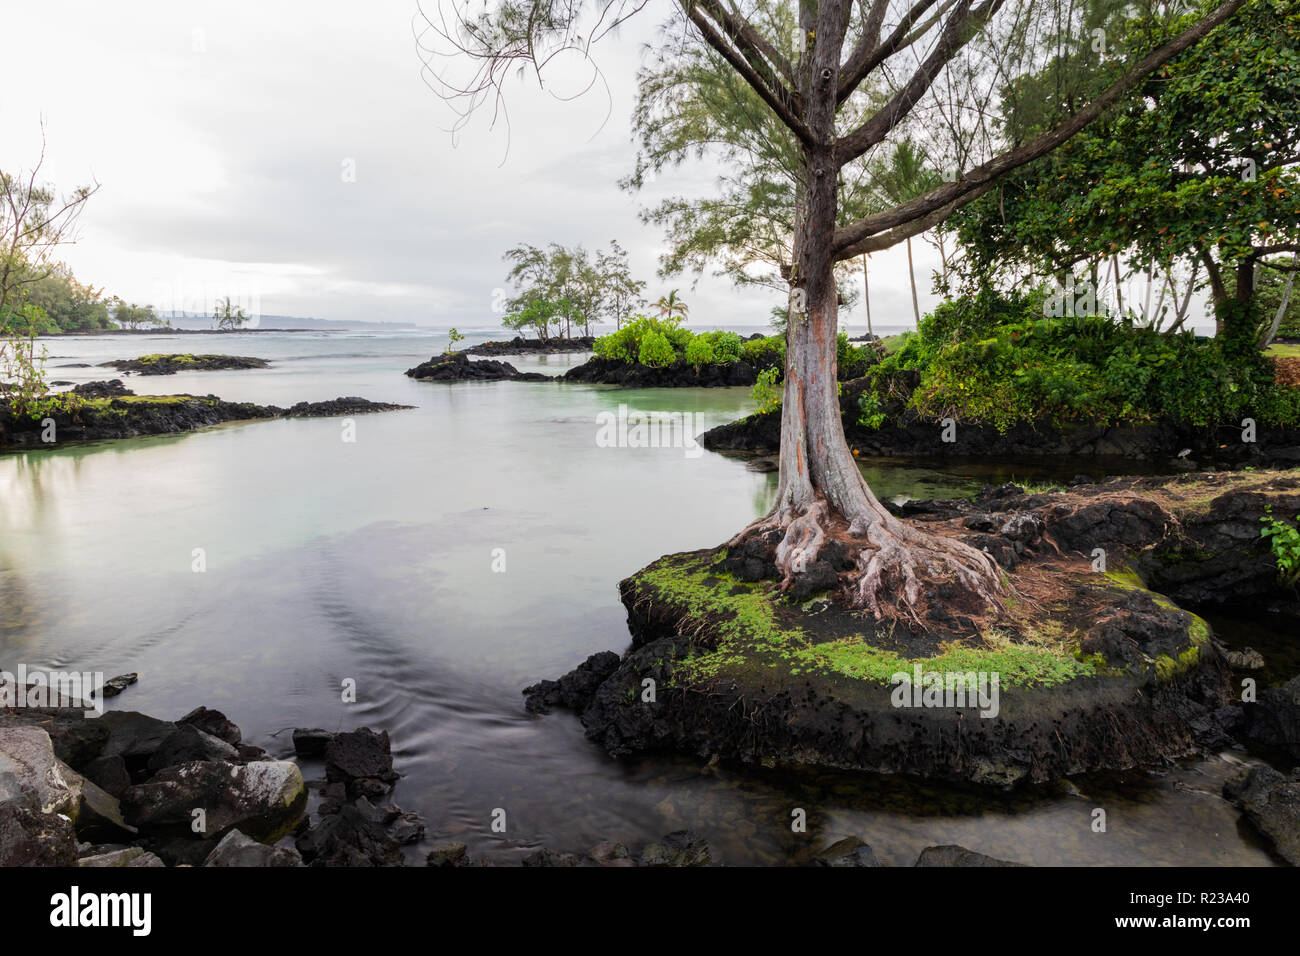 Tranquillo ingresso alla spiaggia hawaiana in Hilo, Hawaii. Albero in piedi sulla roccia protrucing; affioramenti di rocce e vegetazione in background. Foto Stock